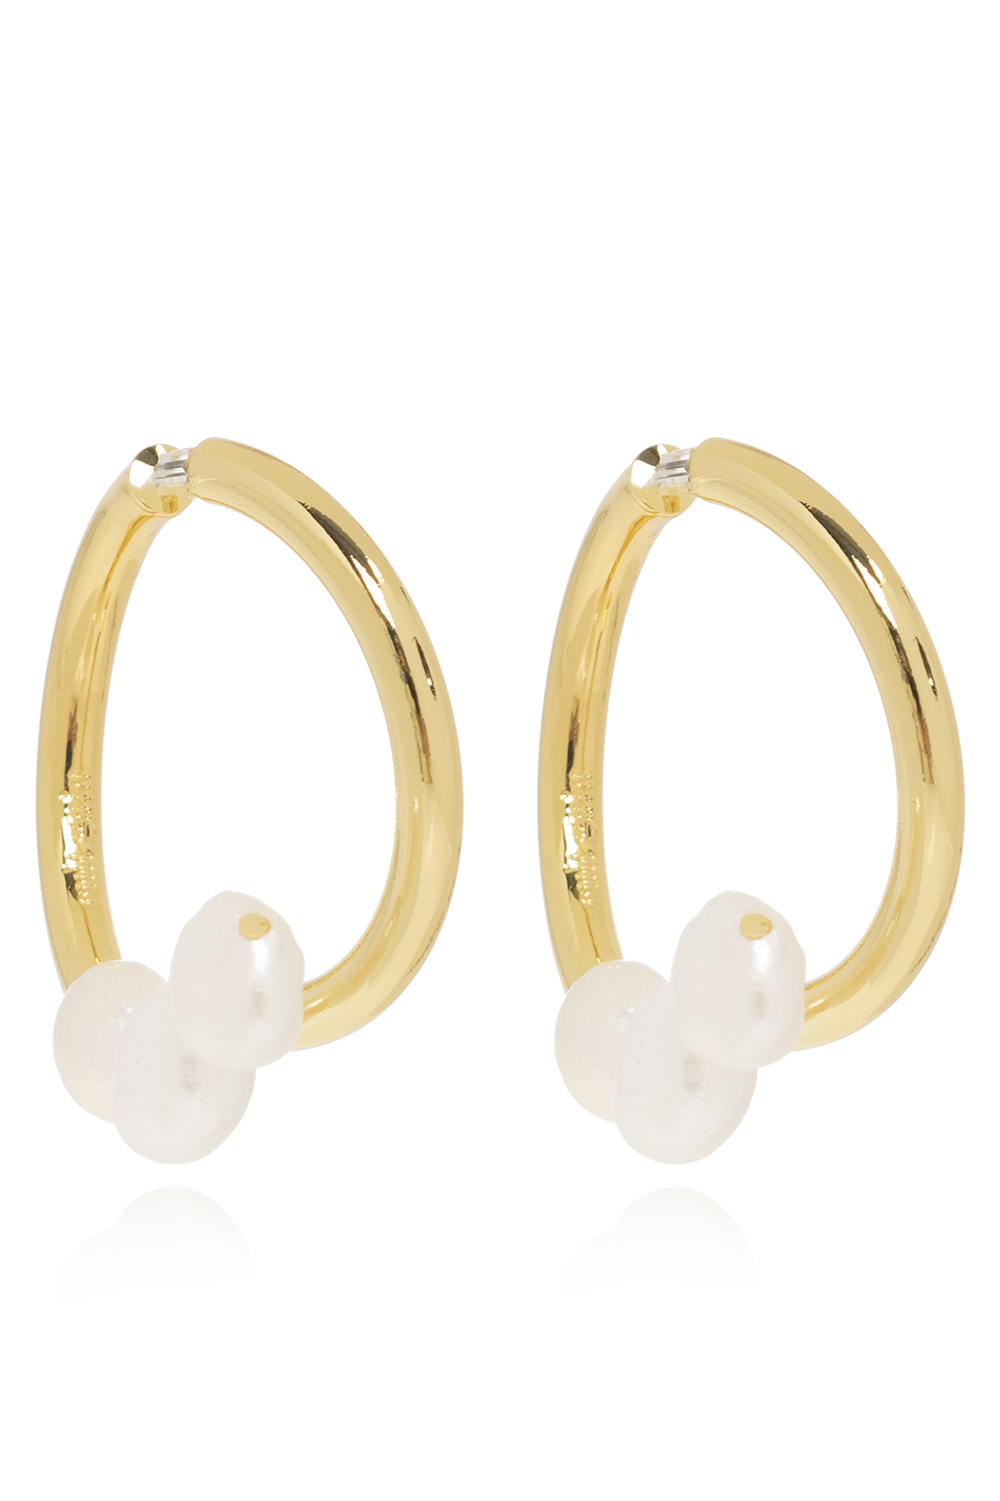 Cult Gaia ‘Leonie’ brass earrings